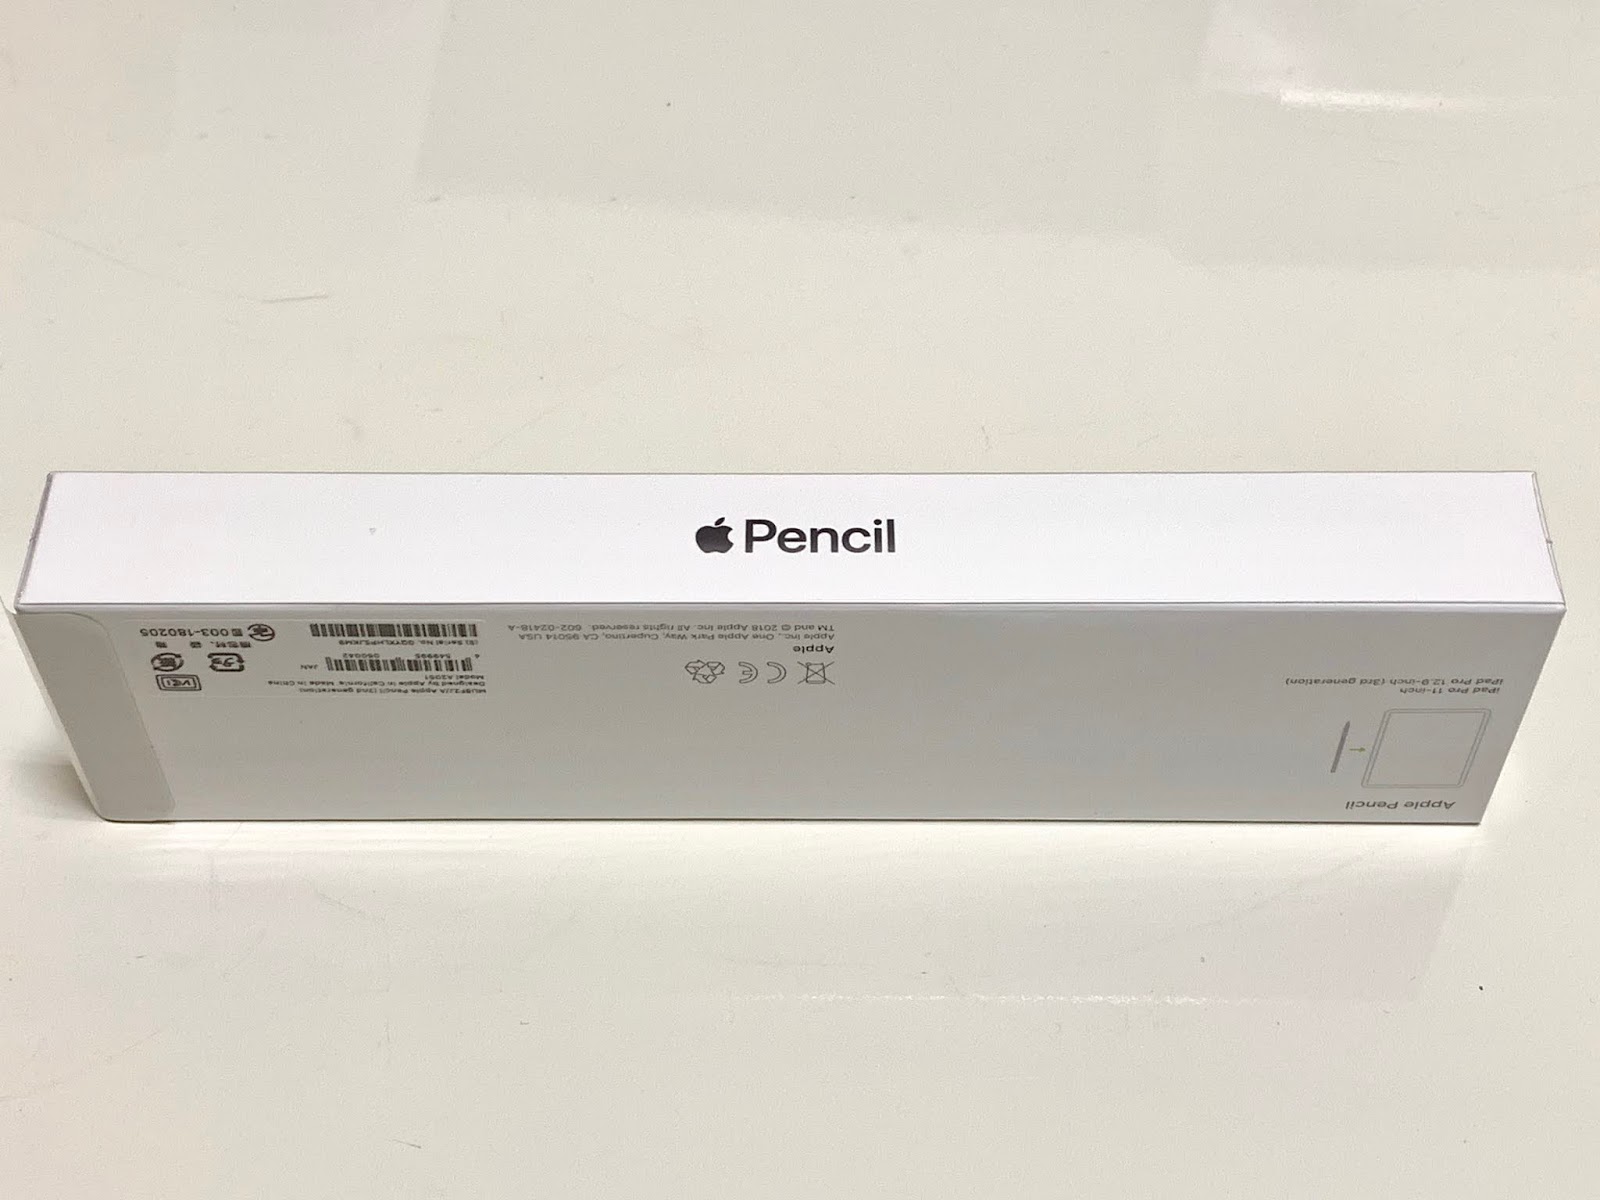 Milanista の解説書: Apple Pencil(第2世代)の開封の儀